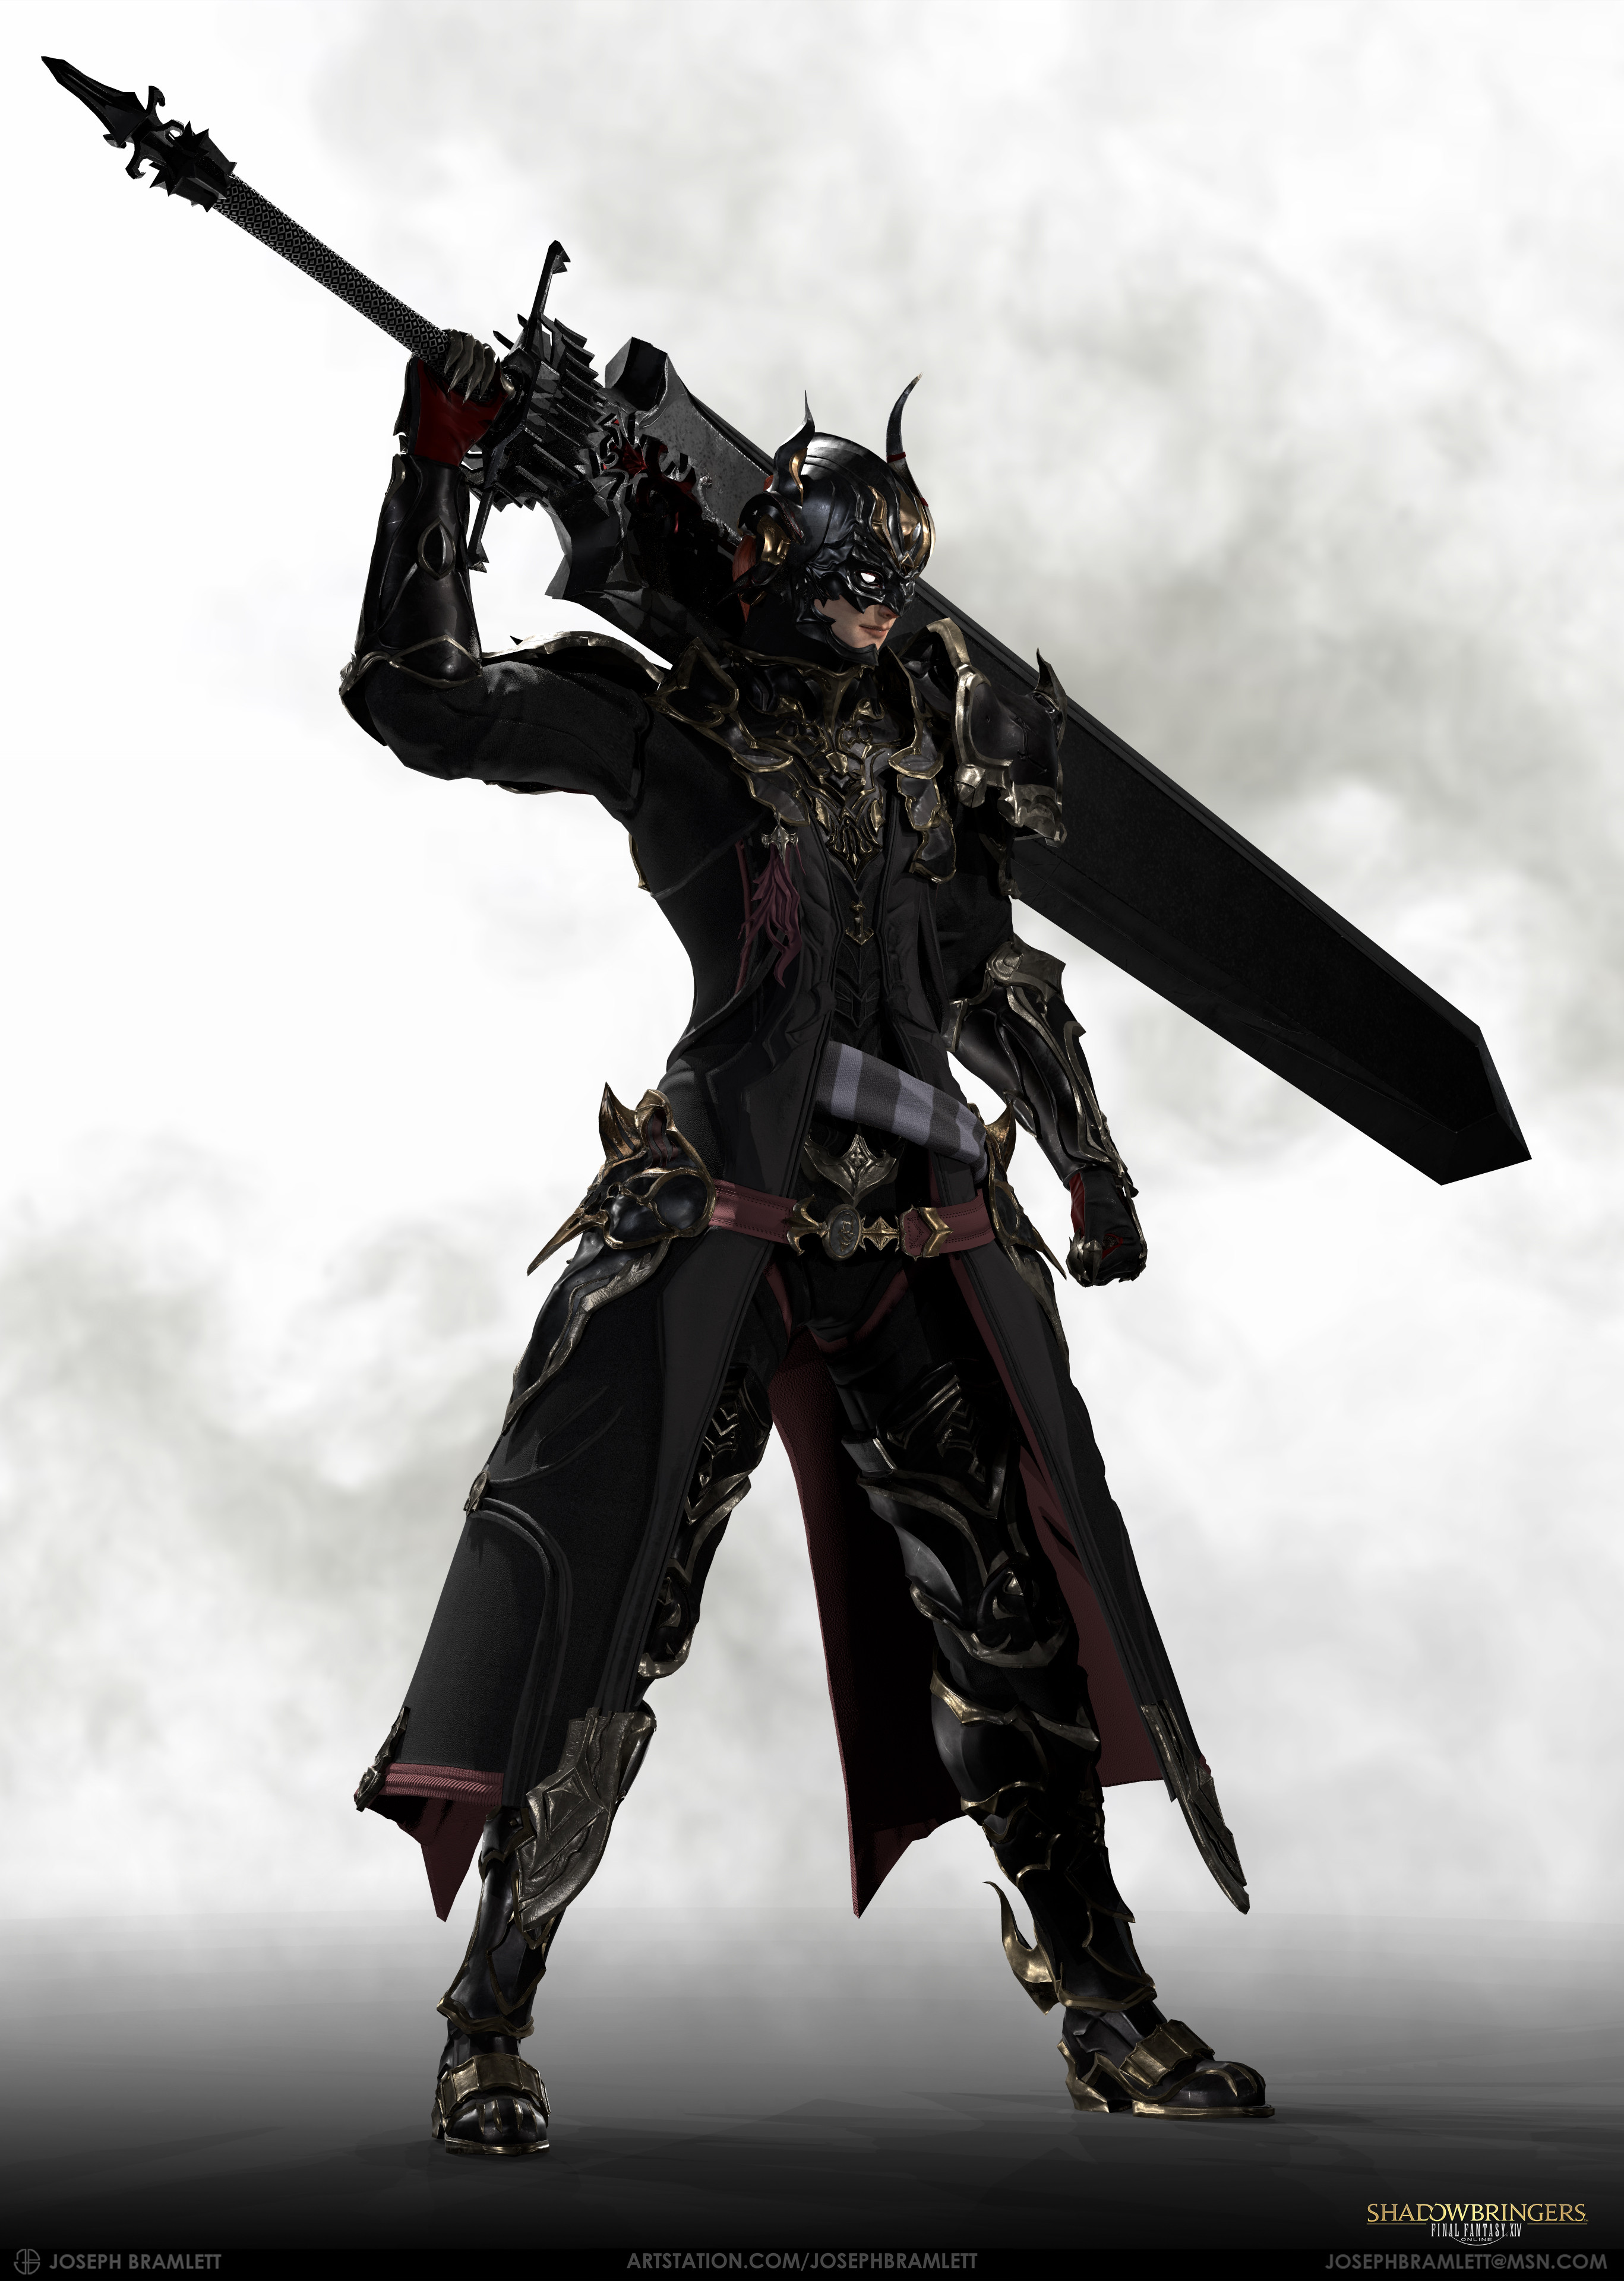 final fantasy 14 dark knight unlock